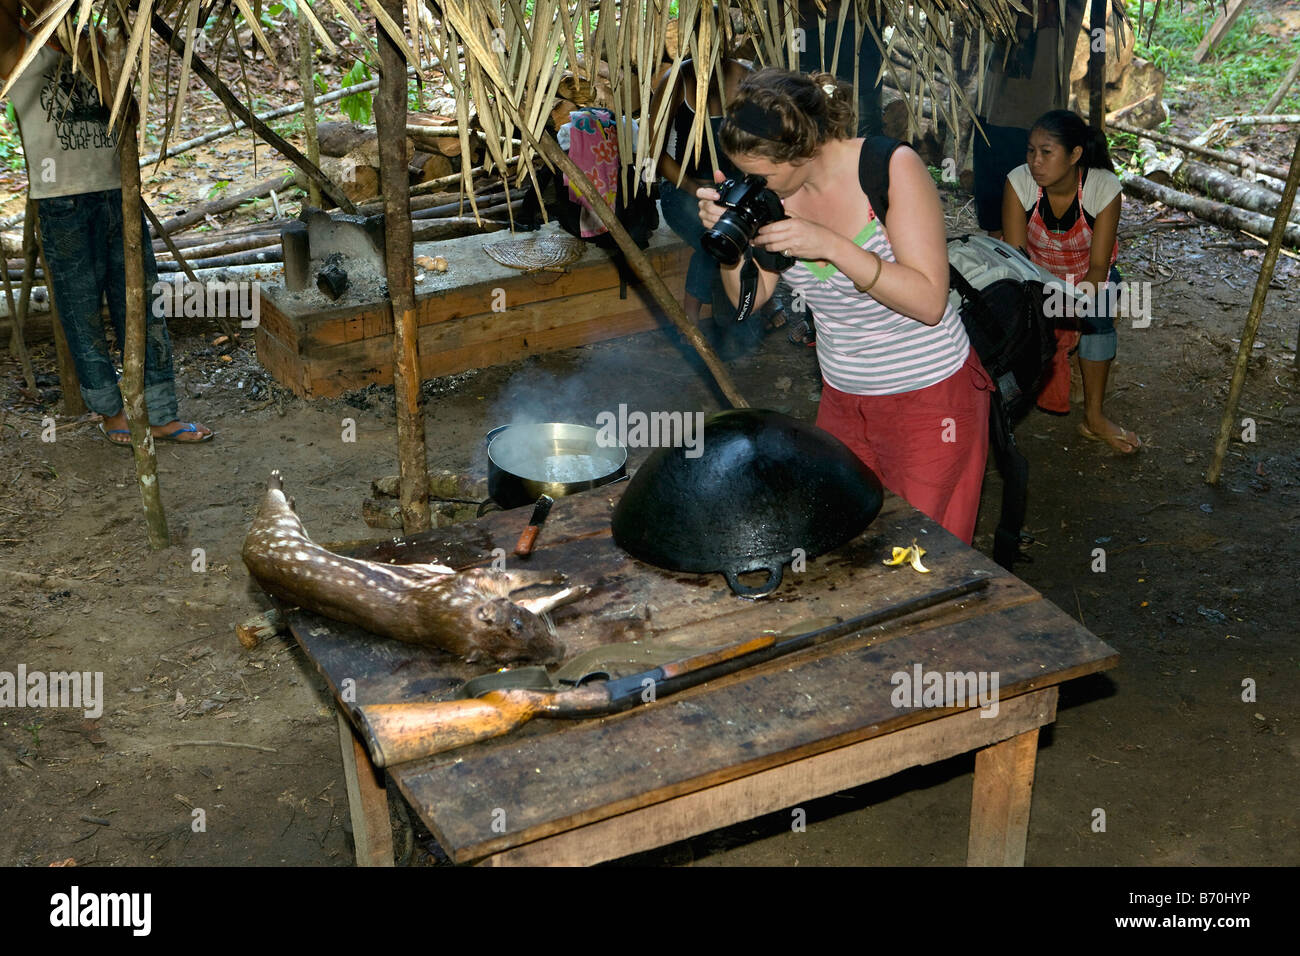 Le Suriname, Kwamalasamutu, décisions touristiques photo de hunted ( paca agouti paca), également connu sous le nom de Paca, une grande chouette rongeur. Banque D'Images